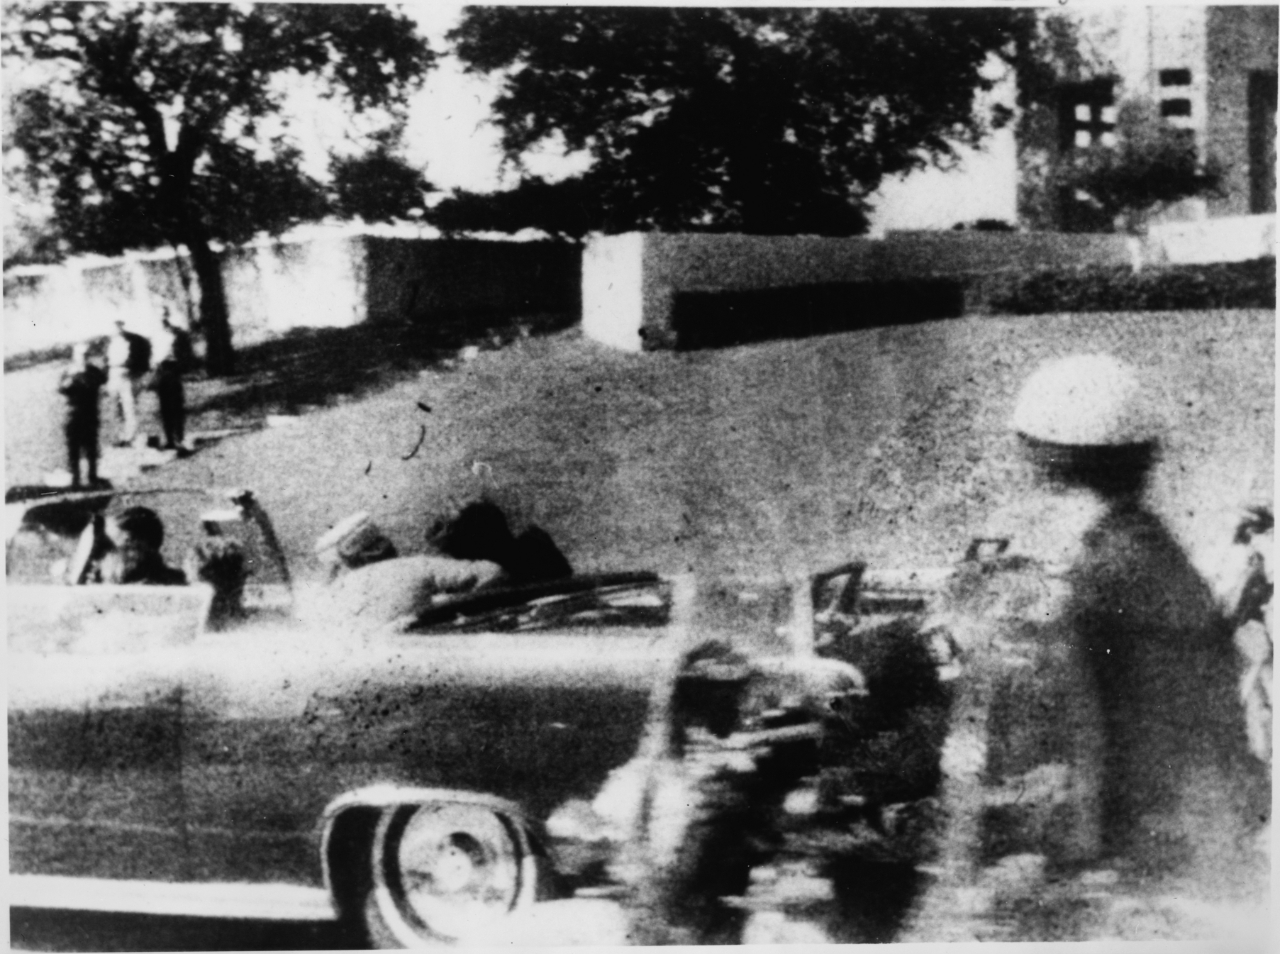 Momento del asesinato de John F. Kennedy en Dallas el 22 de noviembre de 1963. Fotografía de Archivo.